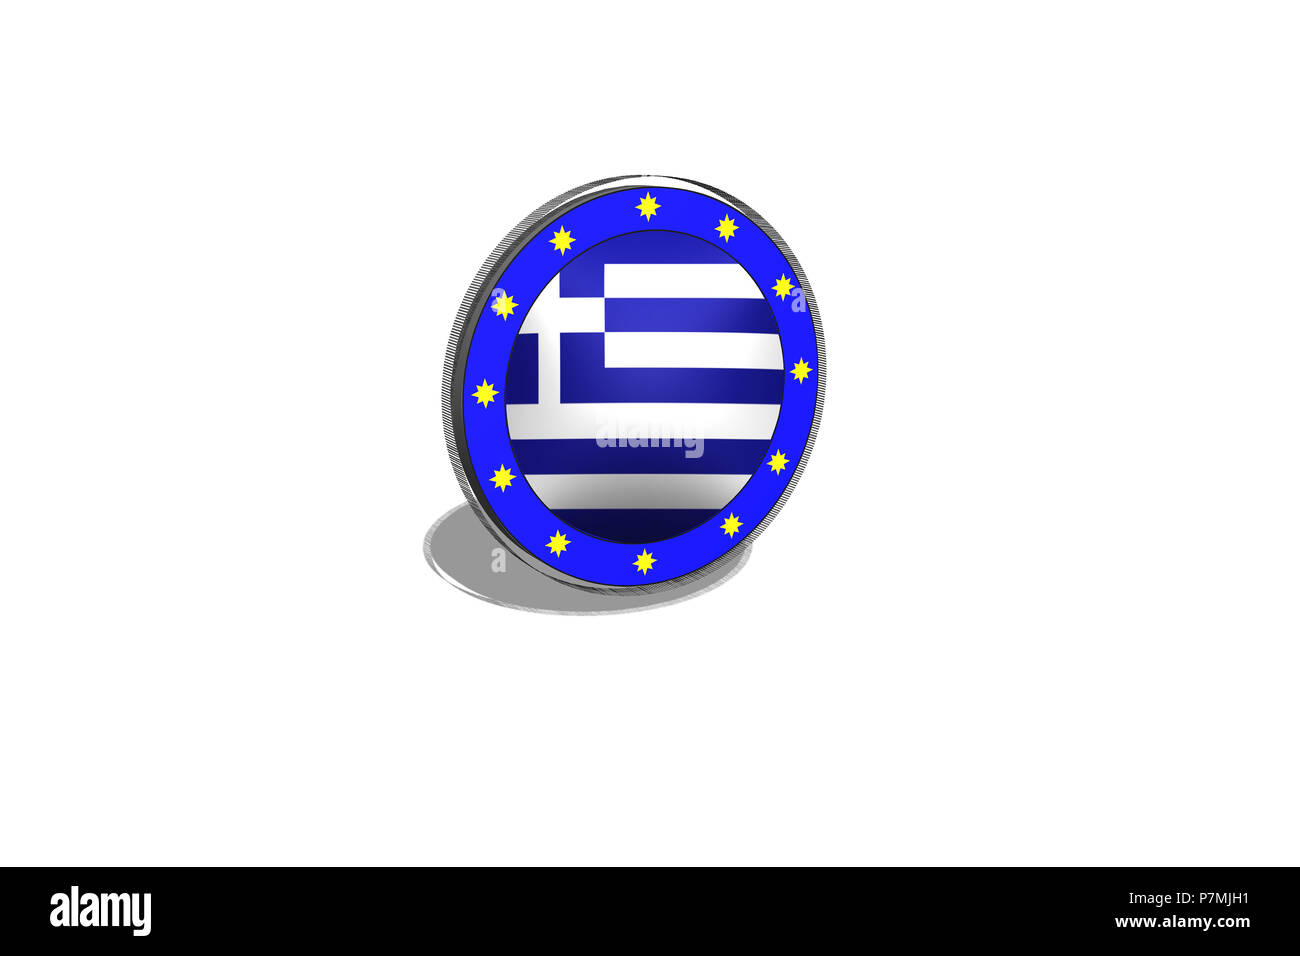 EU-Taste auf eine Schaltfläche mit griechischer Flagge. 3D-Bild - Abbildung. Stockfoto